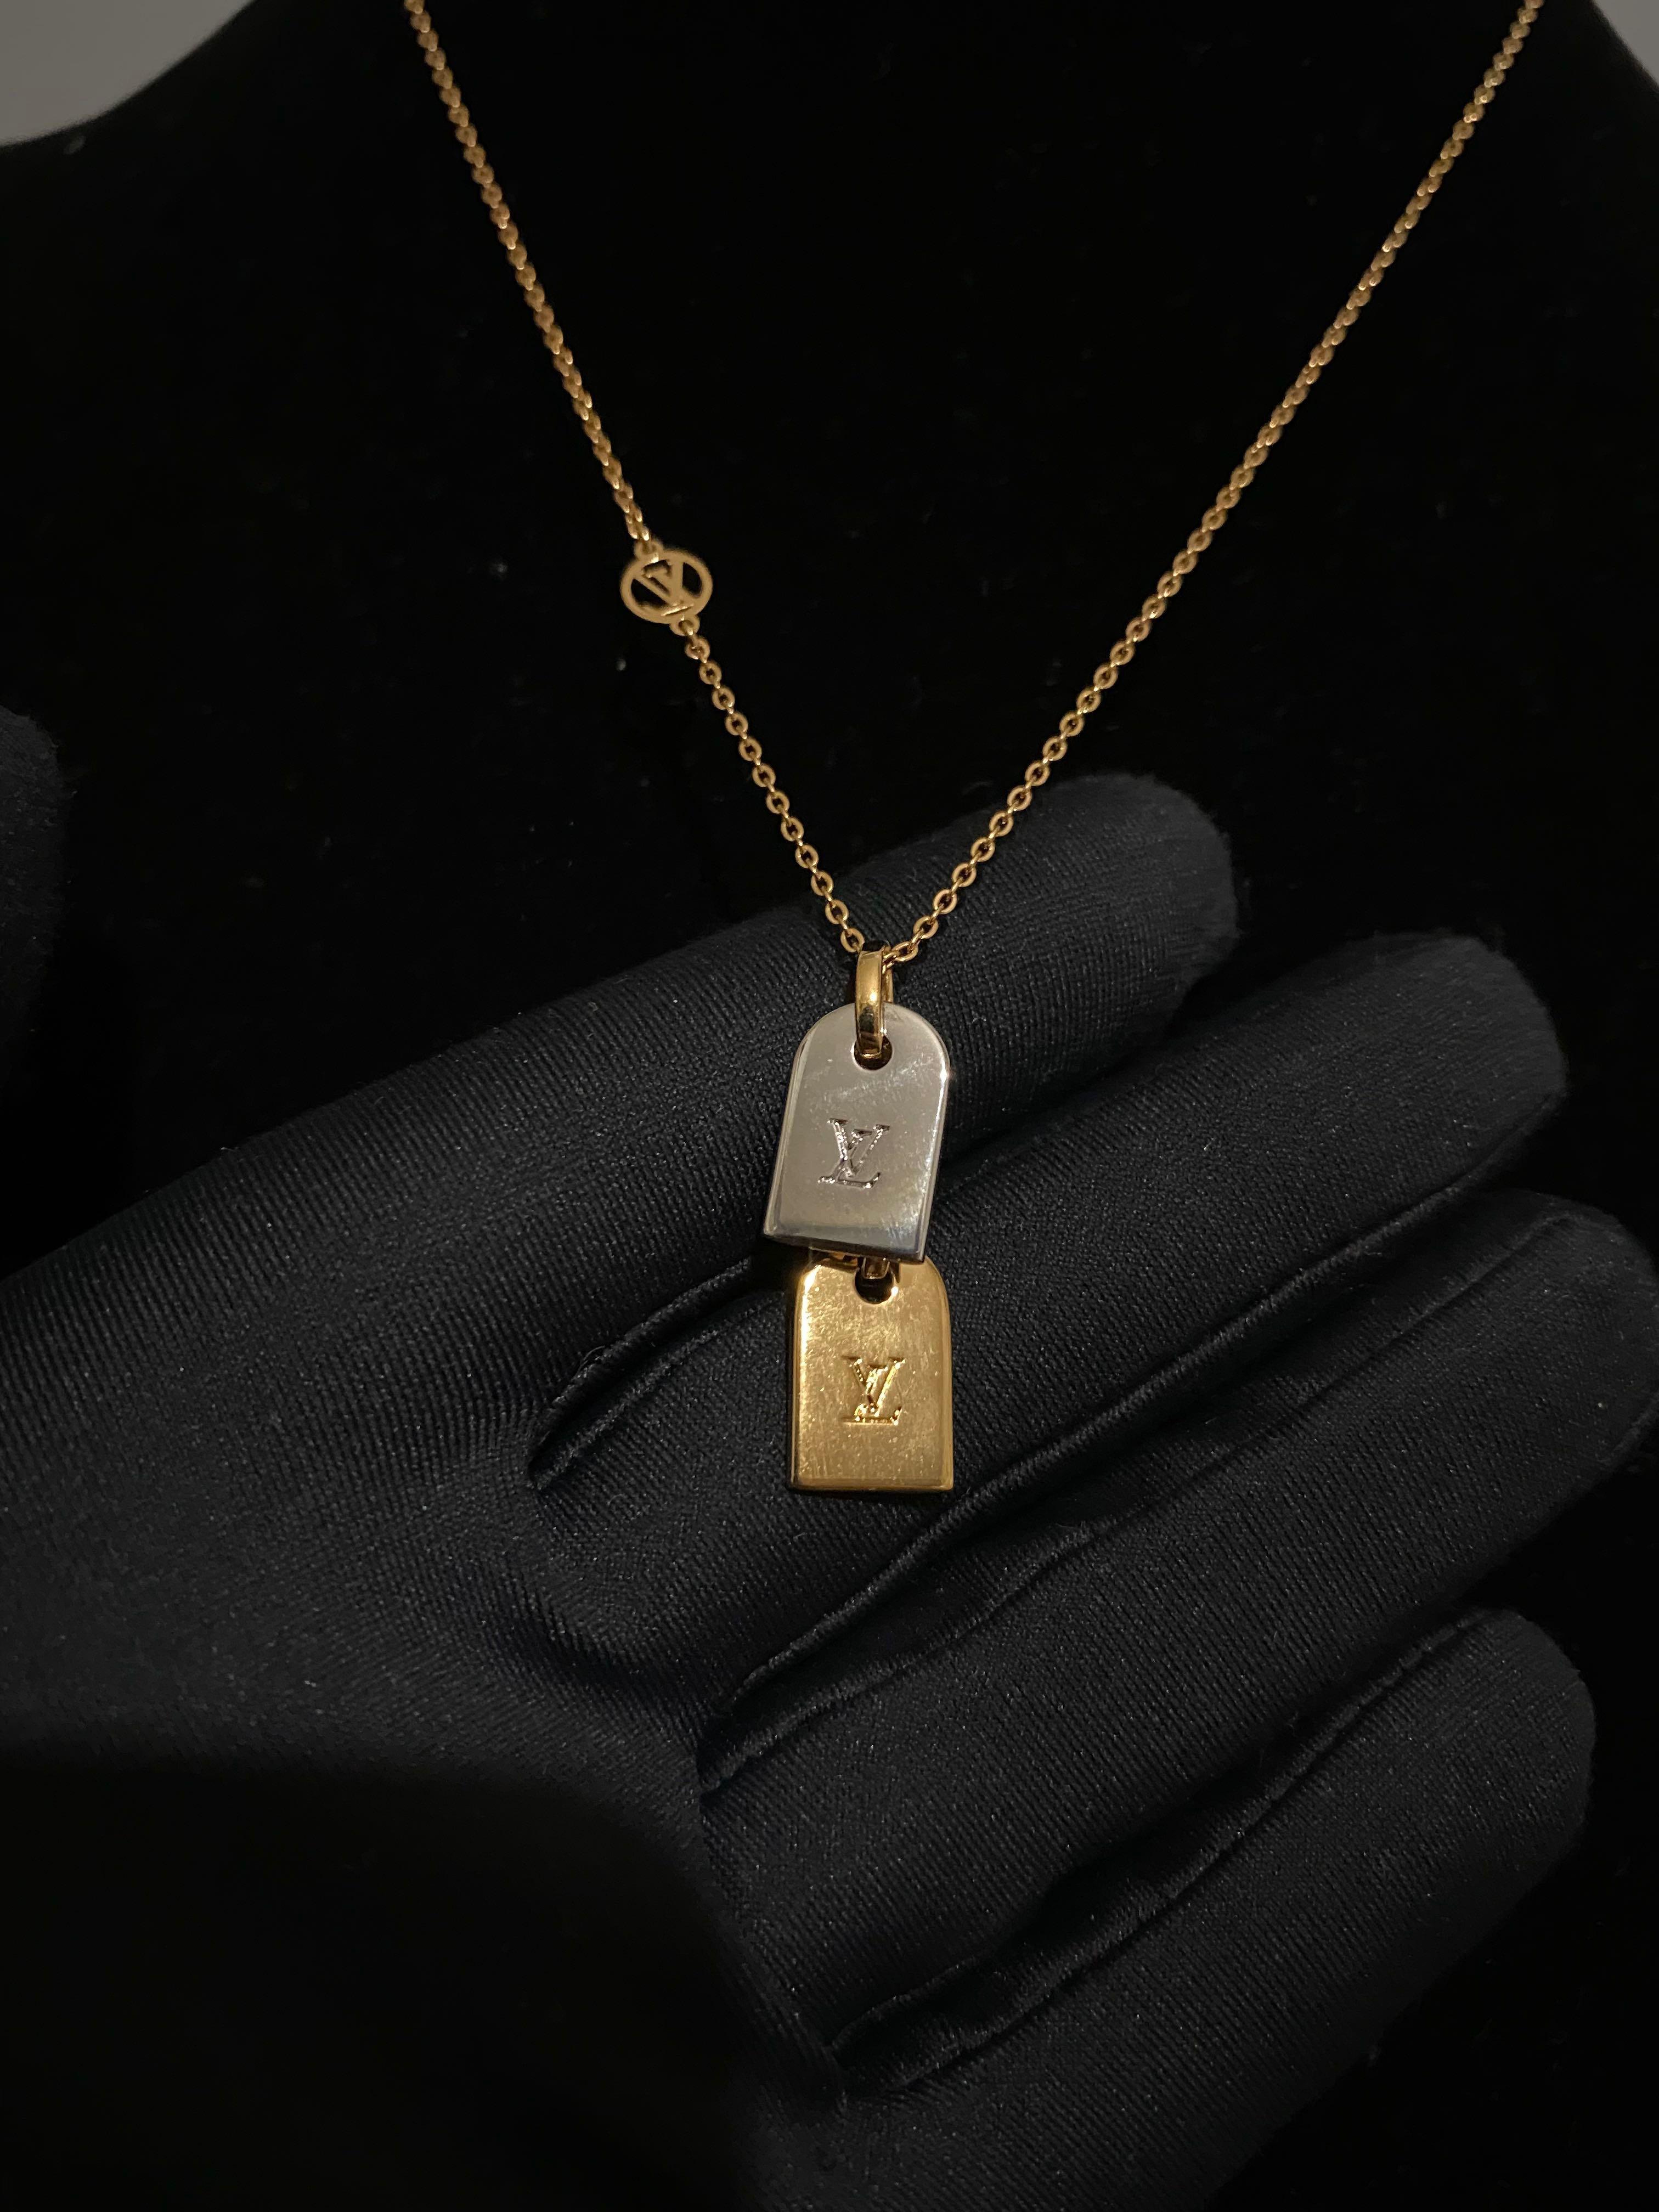 Precious Nanogram Necklace - Luxury S00 Gold